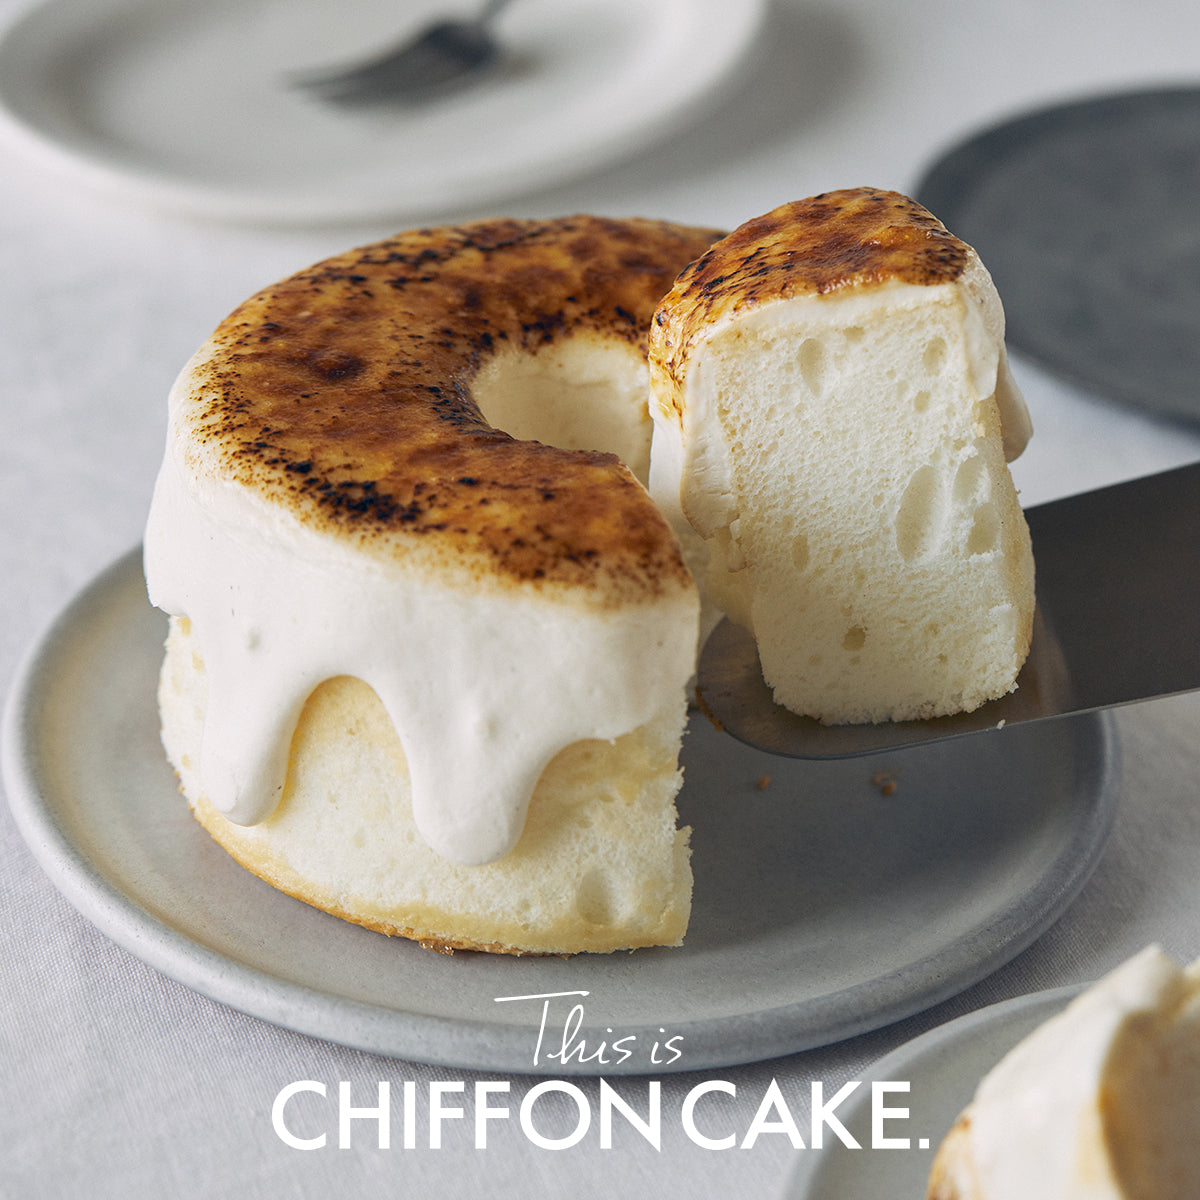 シフォンケーキ専門のオンラインストア「This is CHIFFON CAKE.」